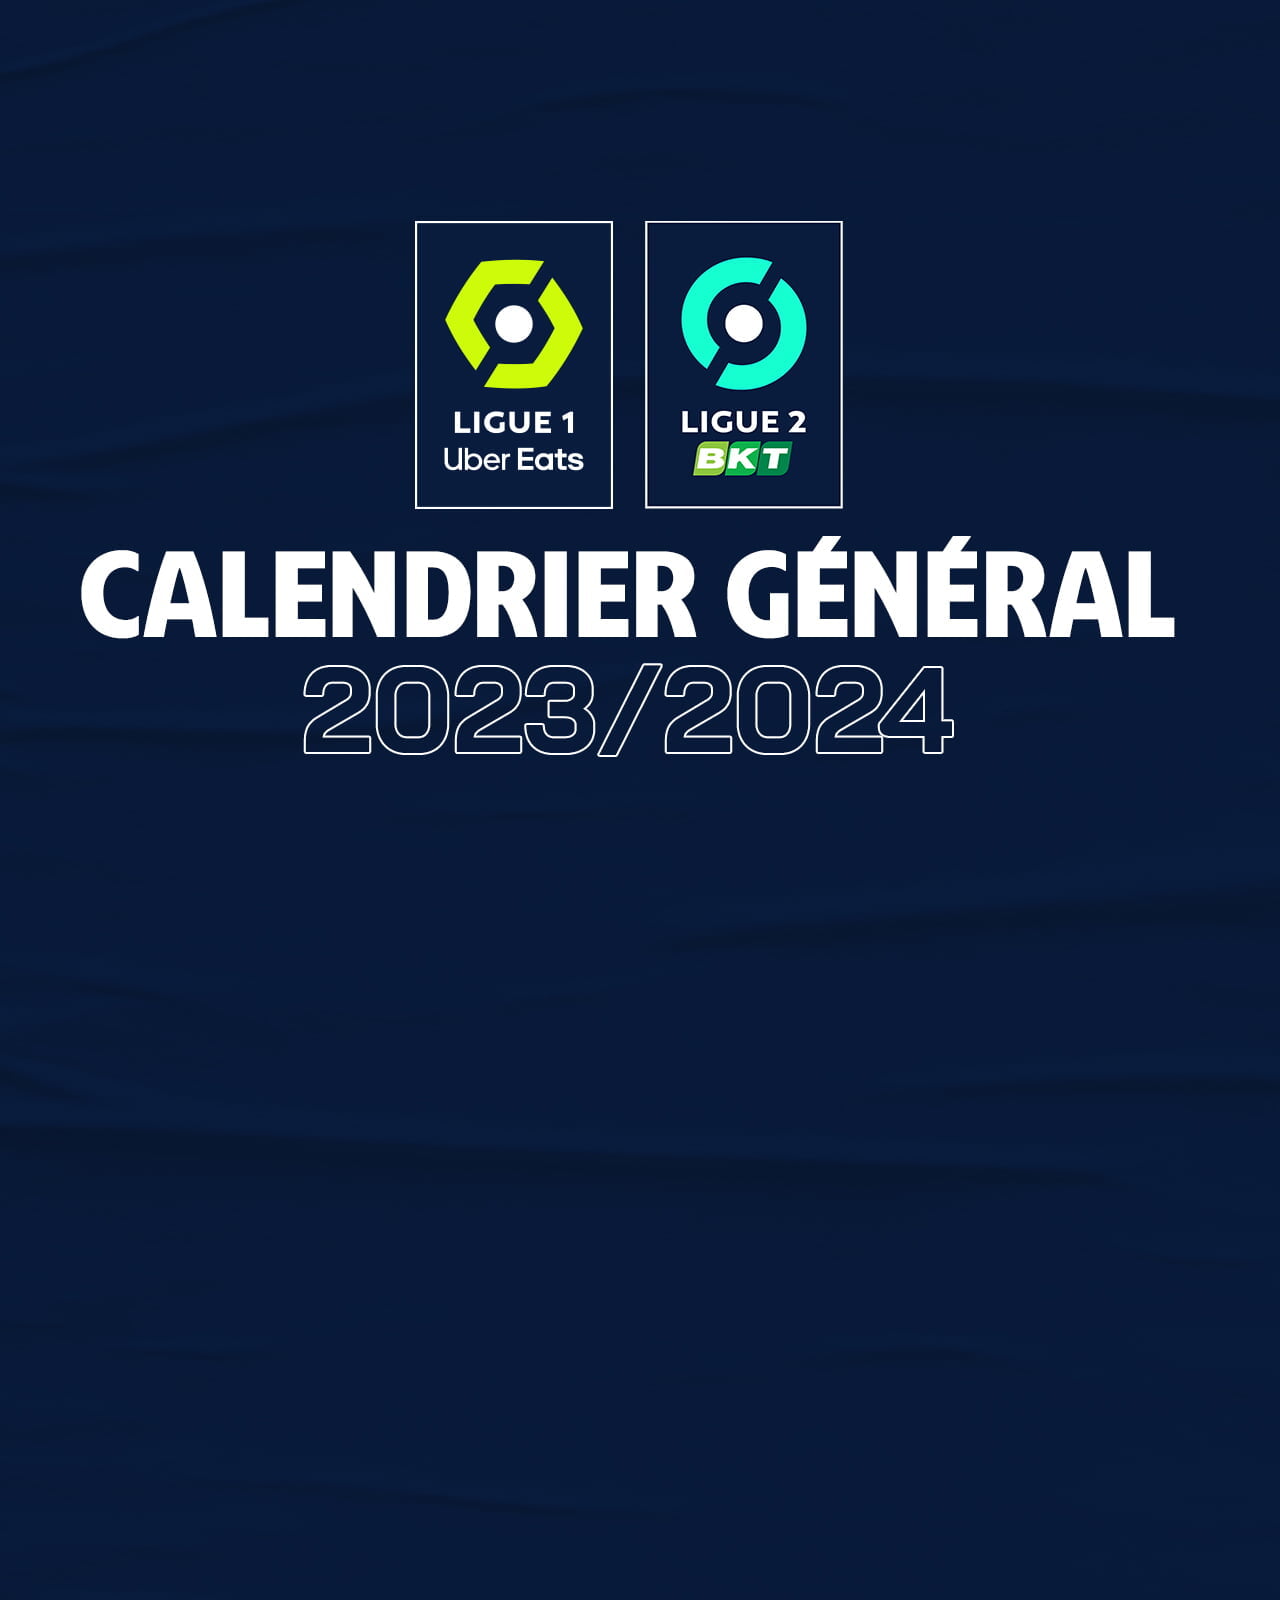 Já é conhecido o calendário da I Liga para 2023/24